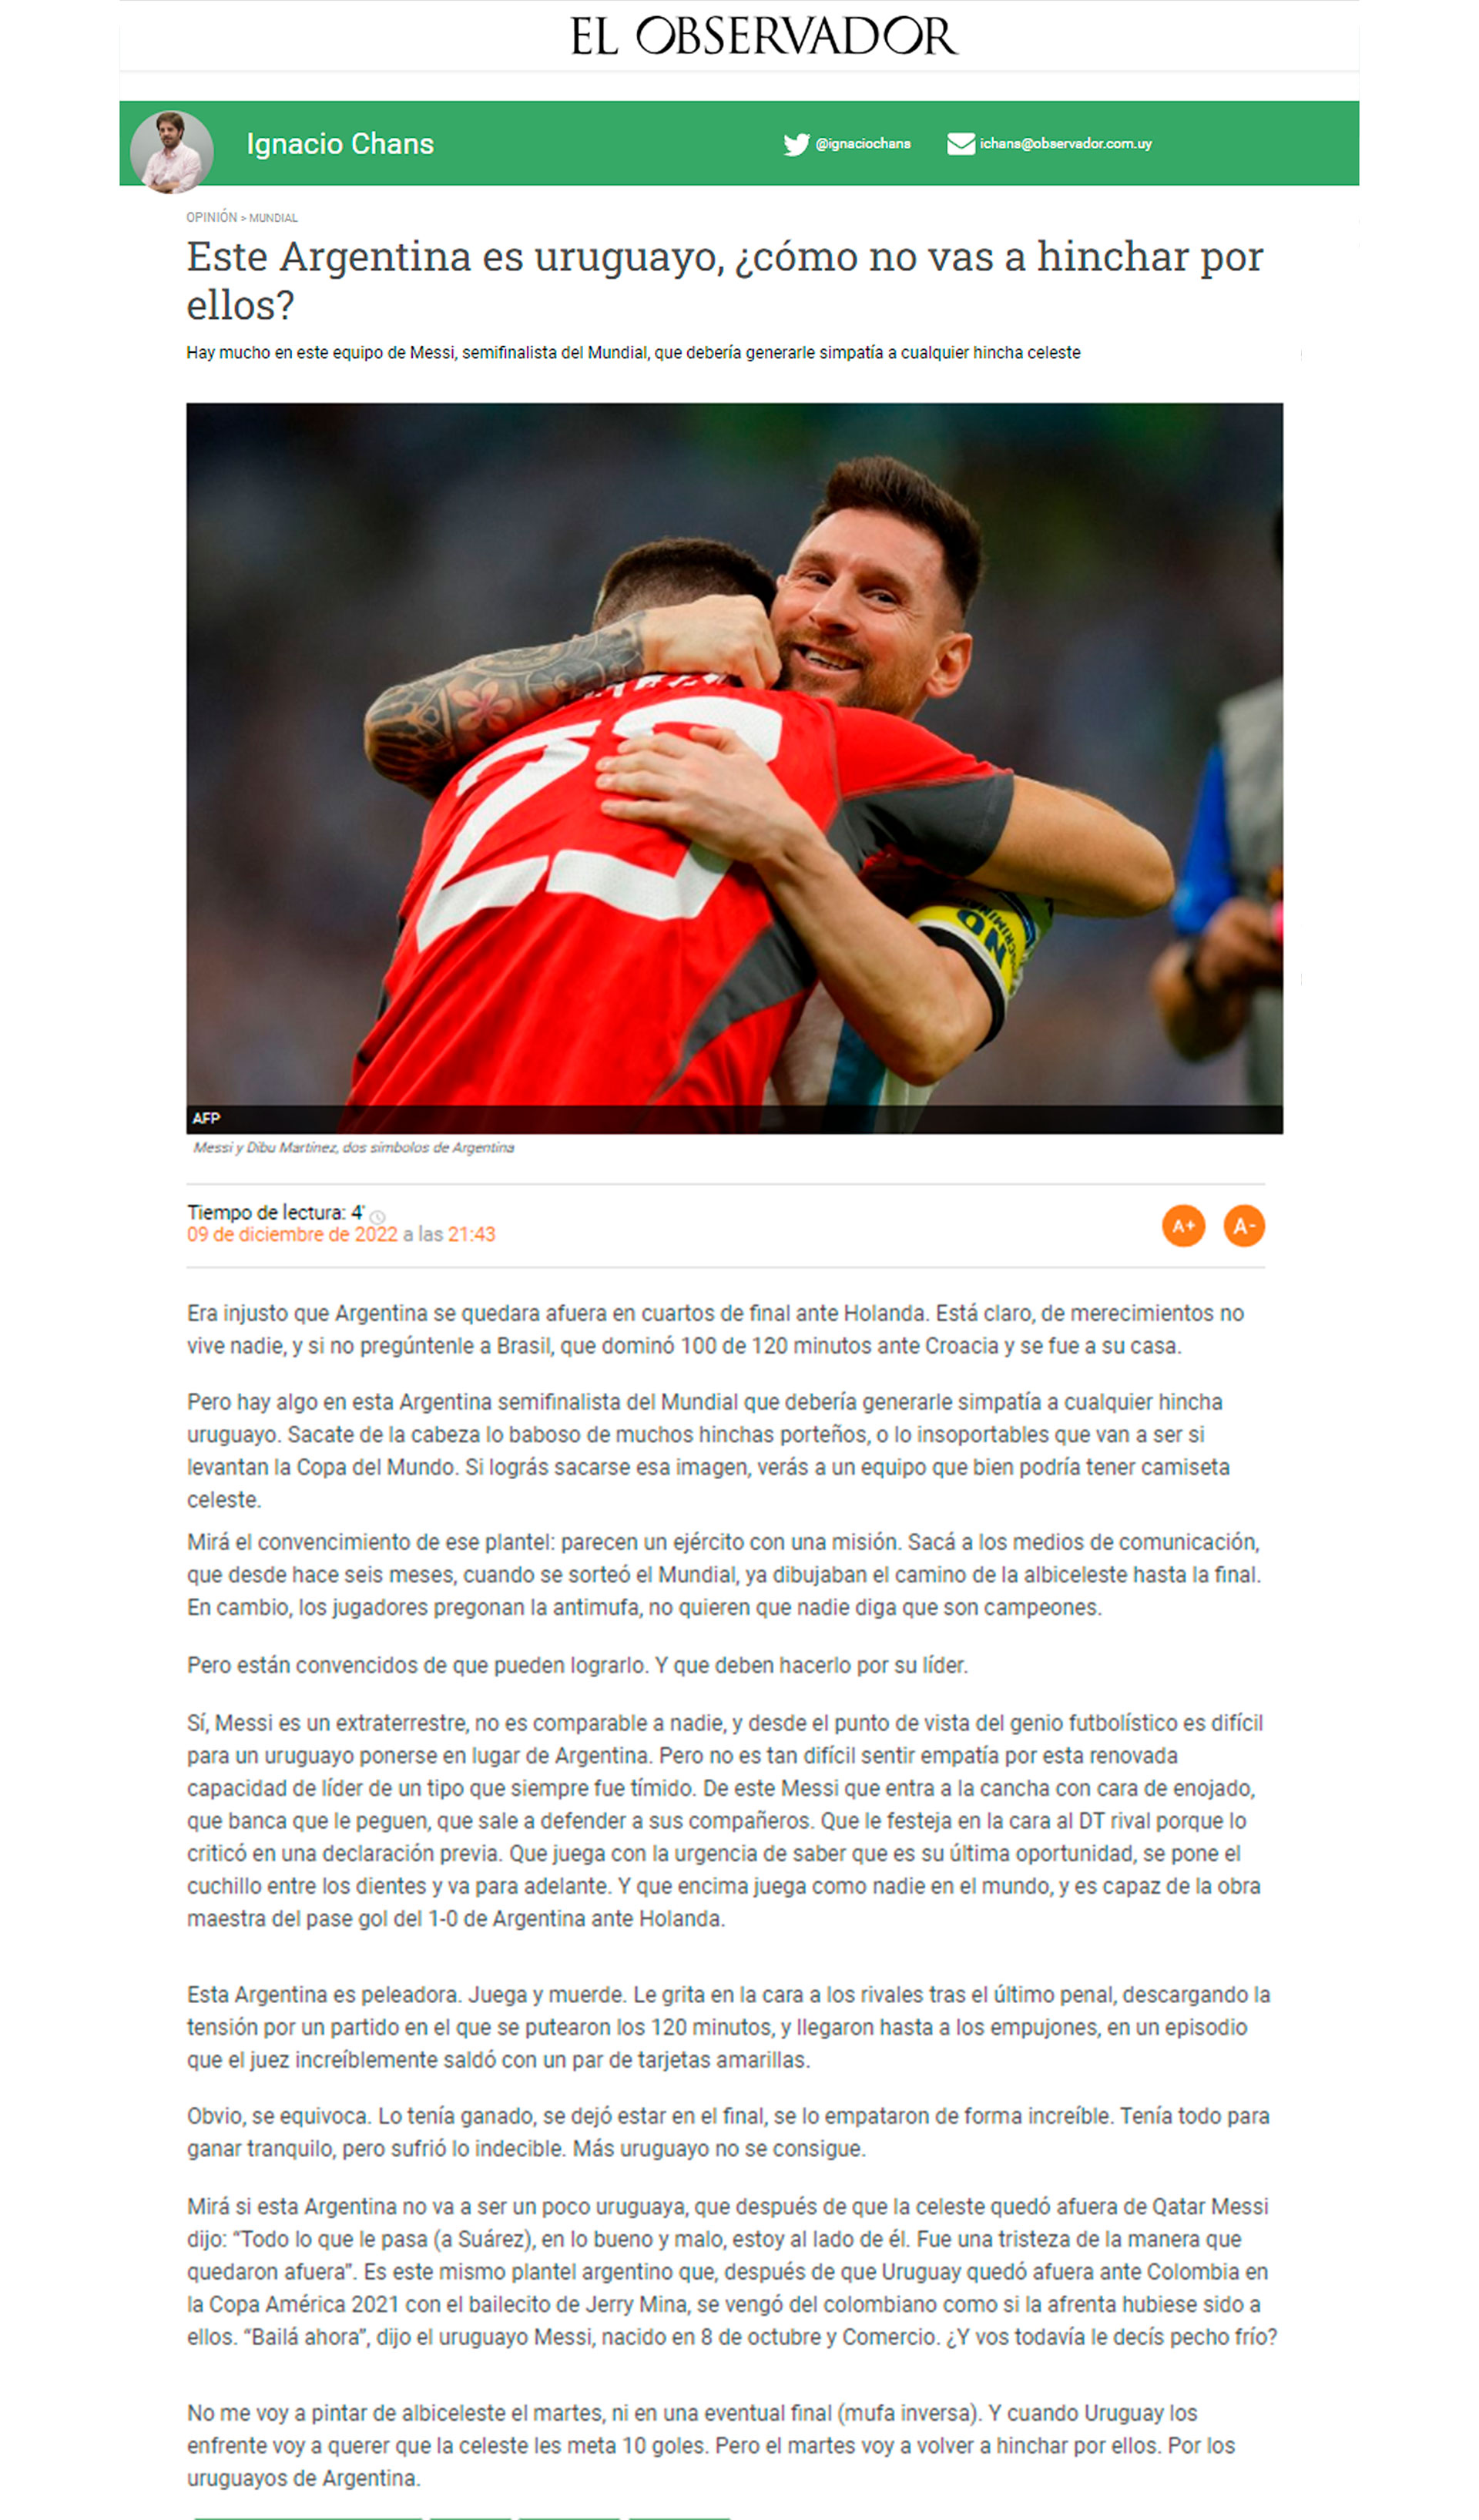 La columna de opinión en Uruguay sobre el juego de la selección argentina 